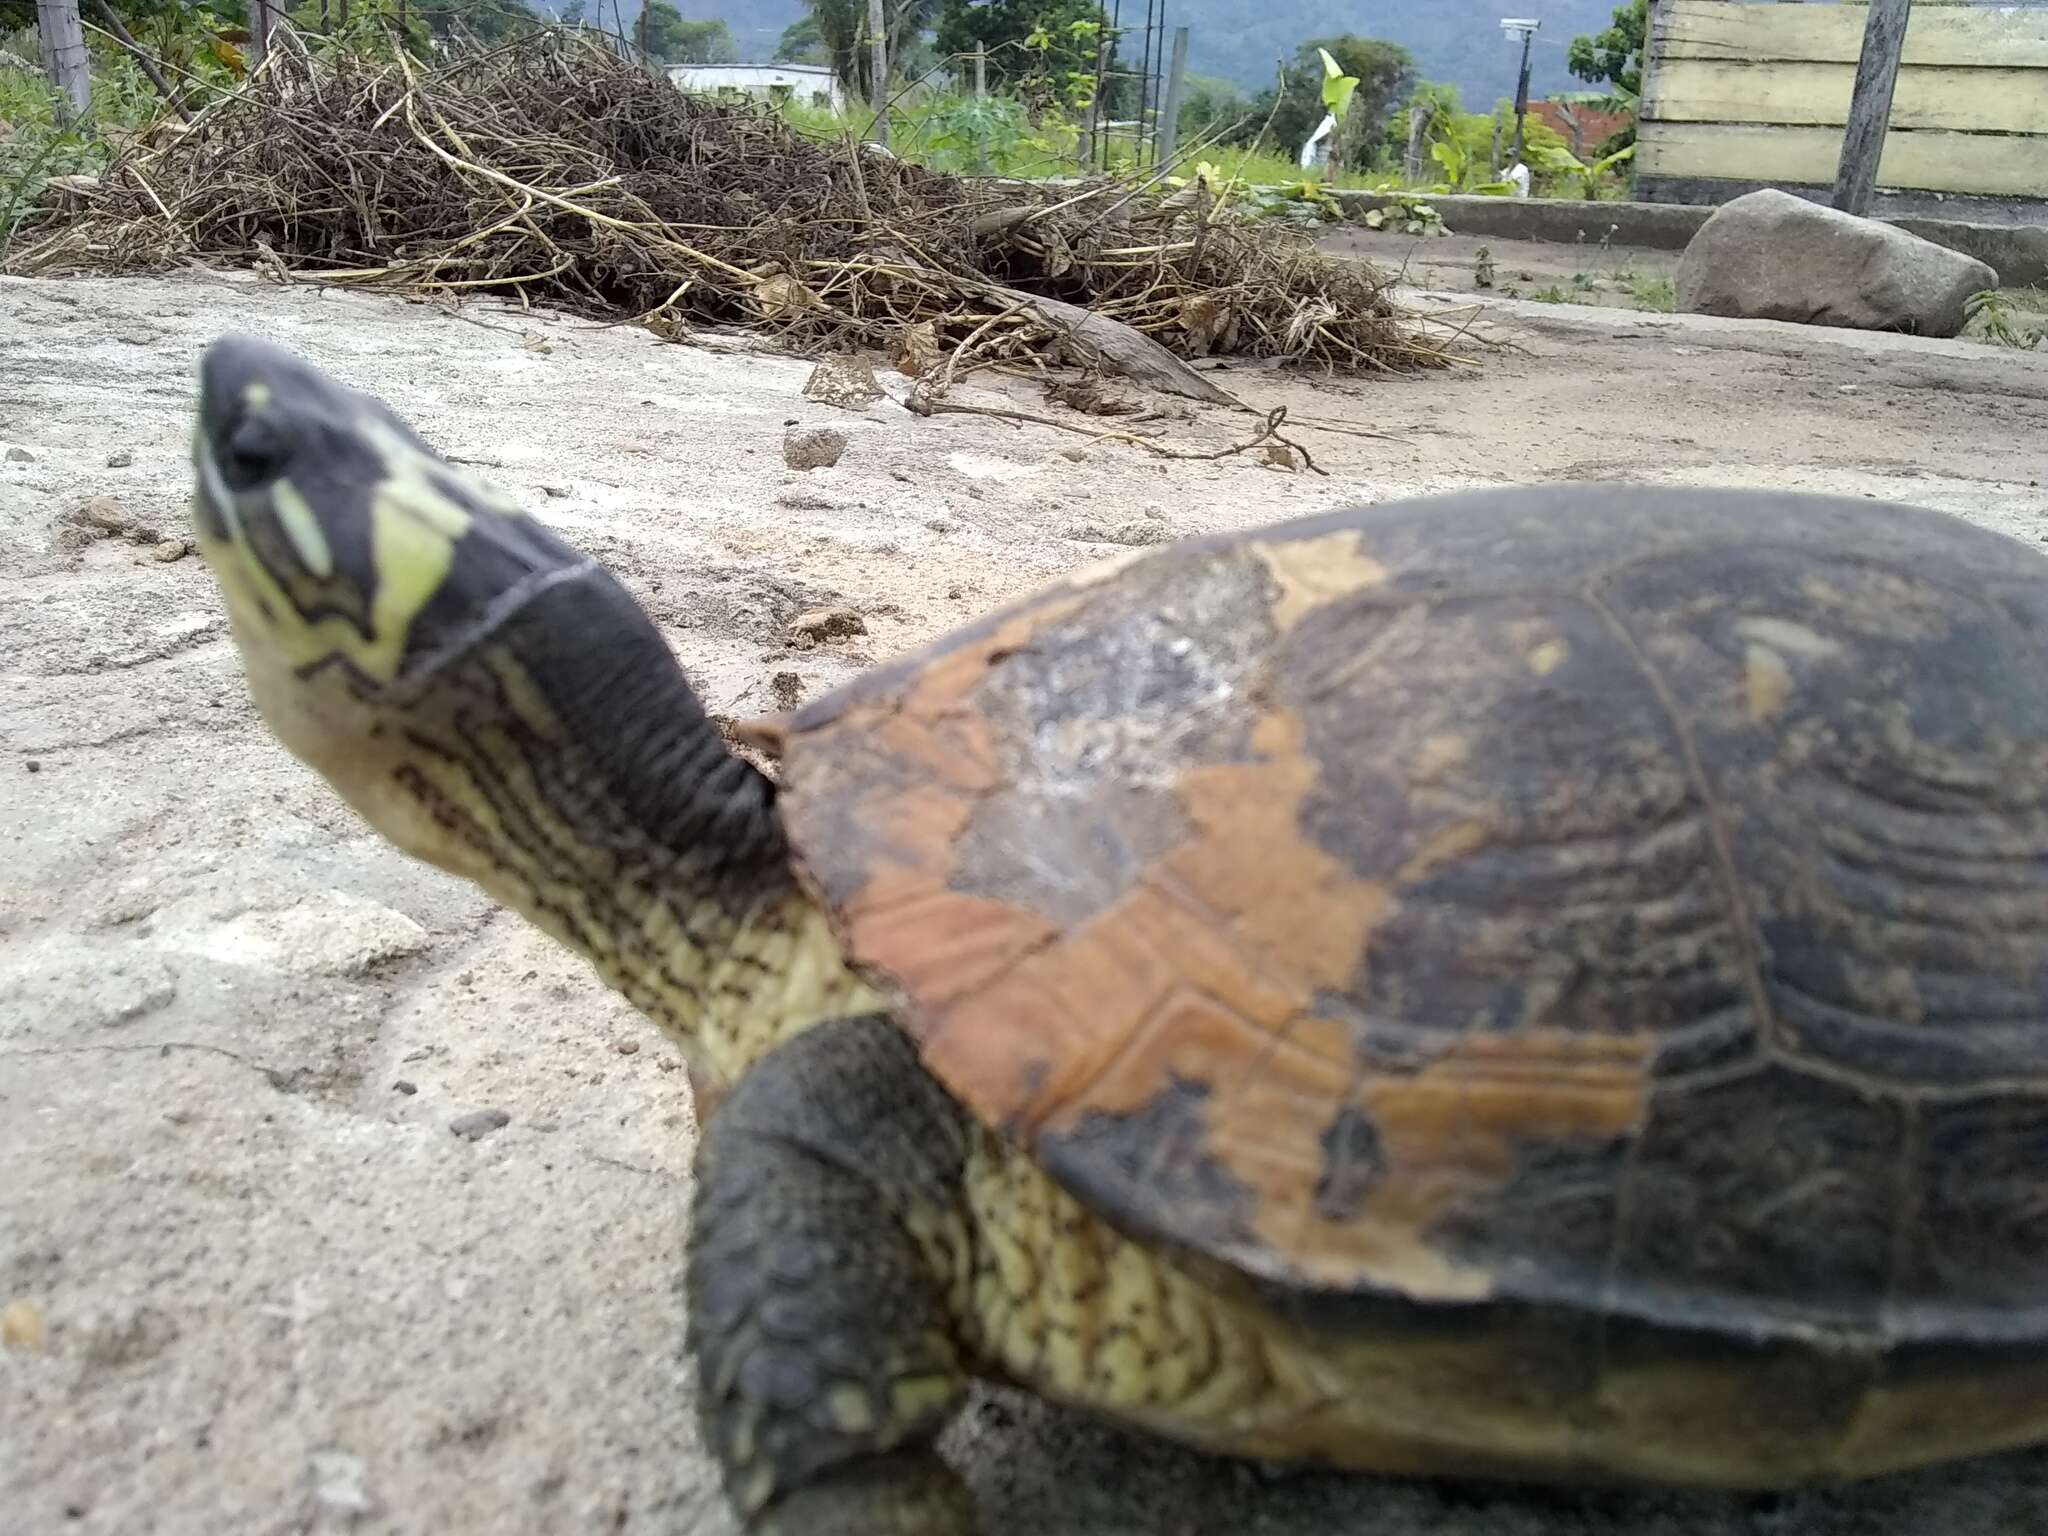 Image of Maracaibo Wood Turtle